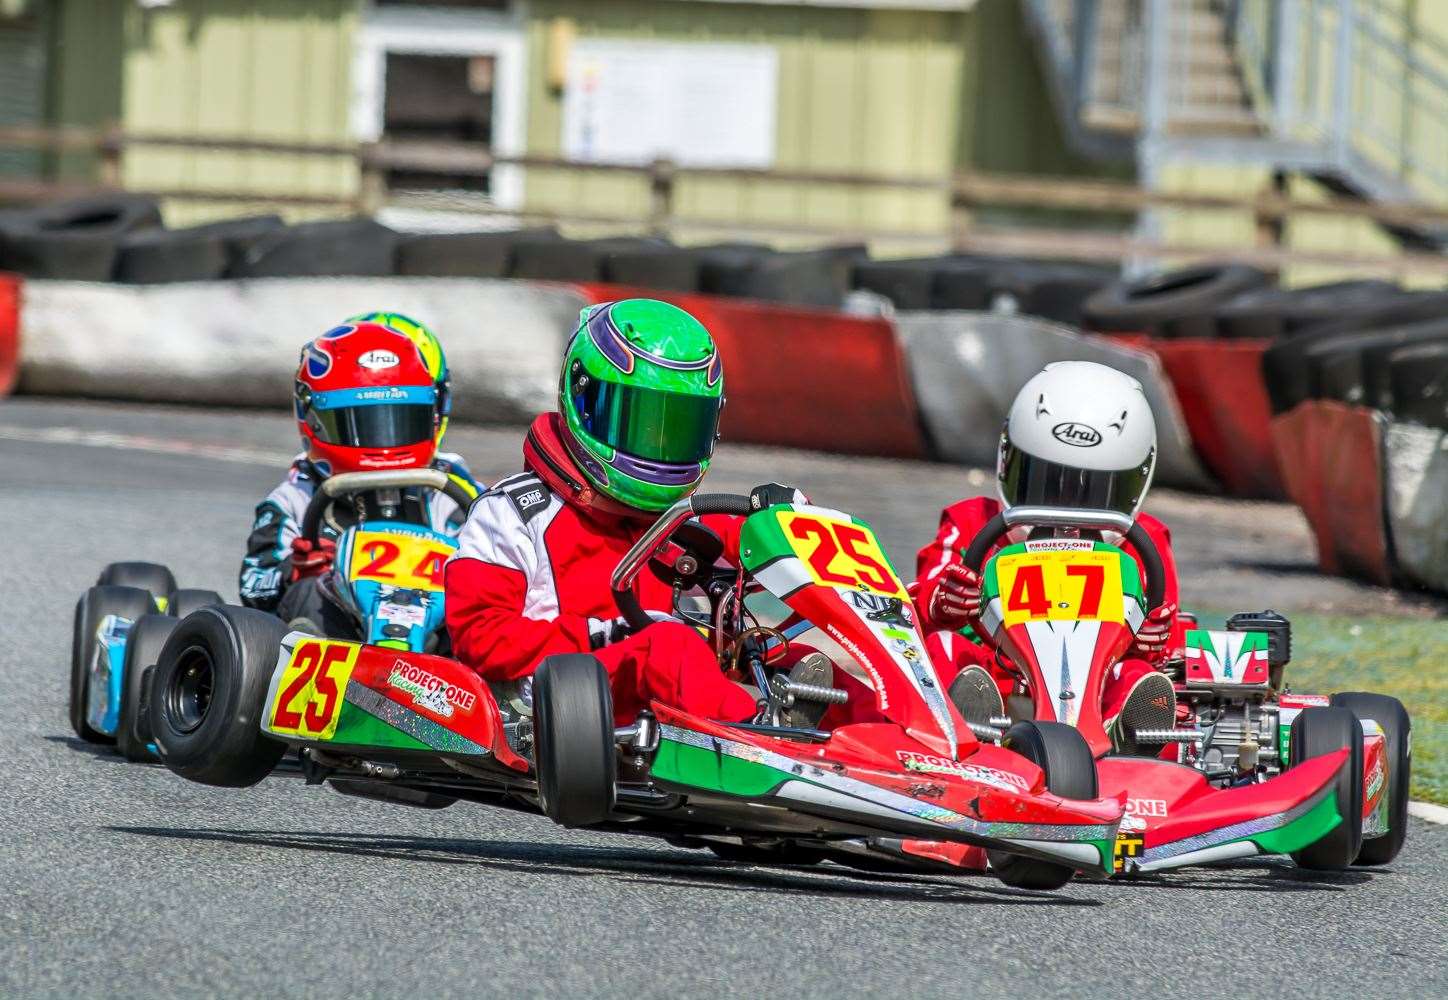 Racing at the circuit, May 2015.Photo: Paul Babington